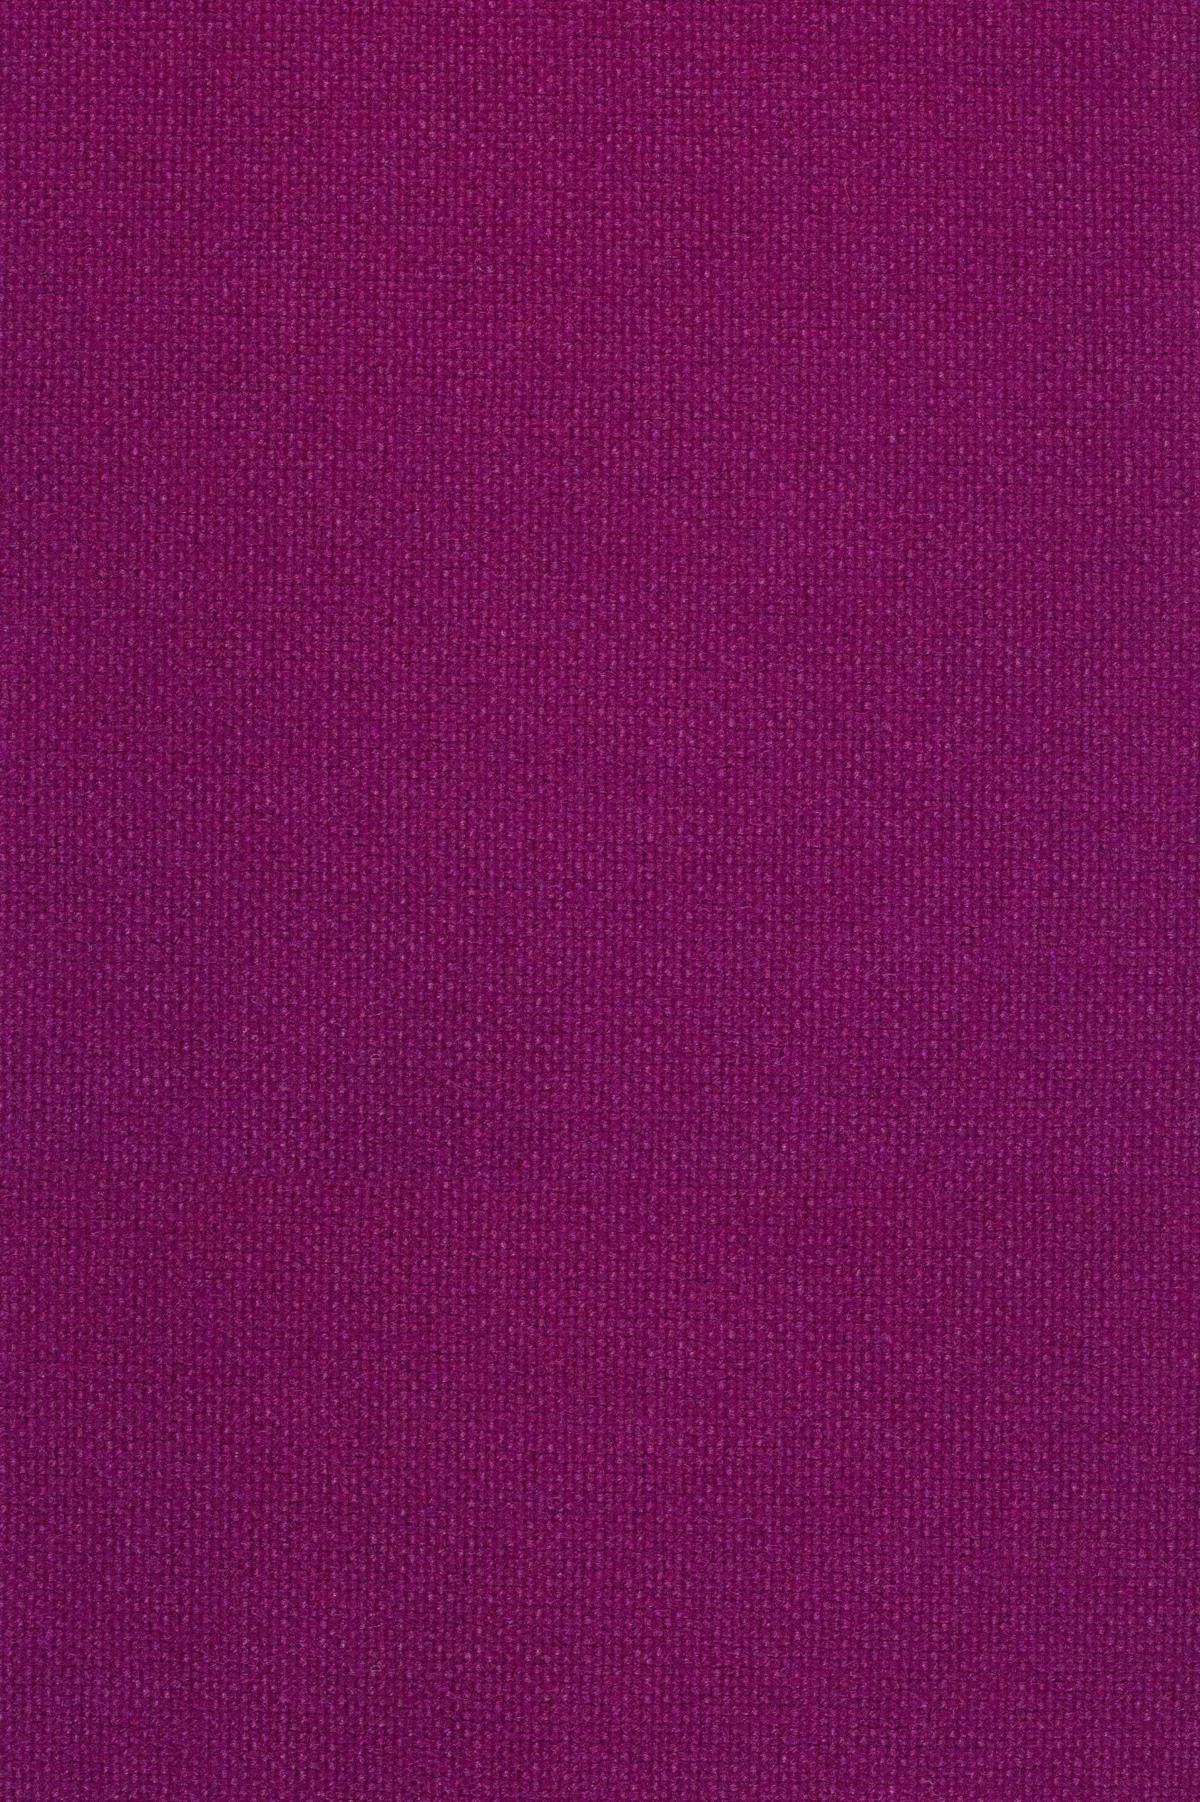 Fabric sample Hallingdal 65 563 purple